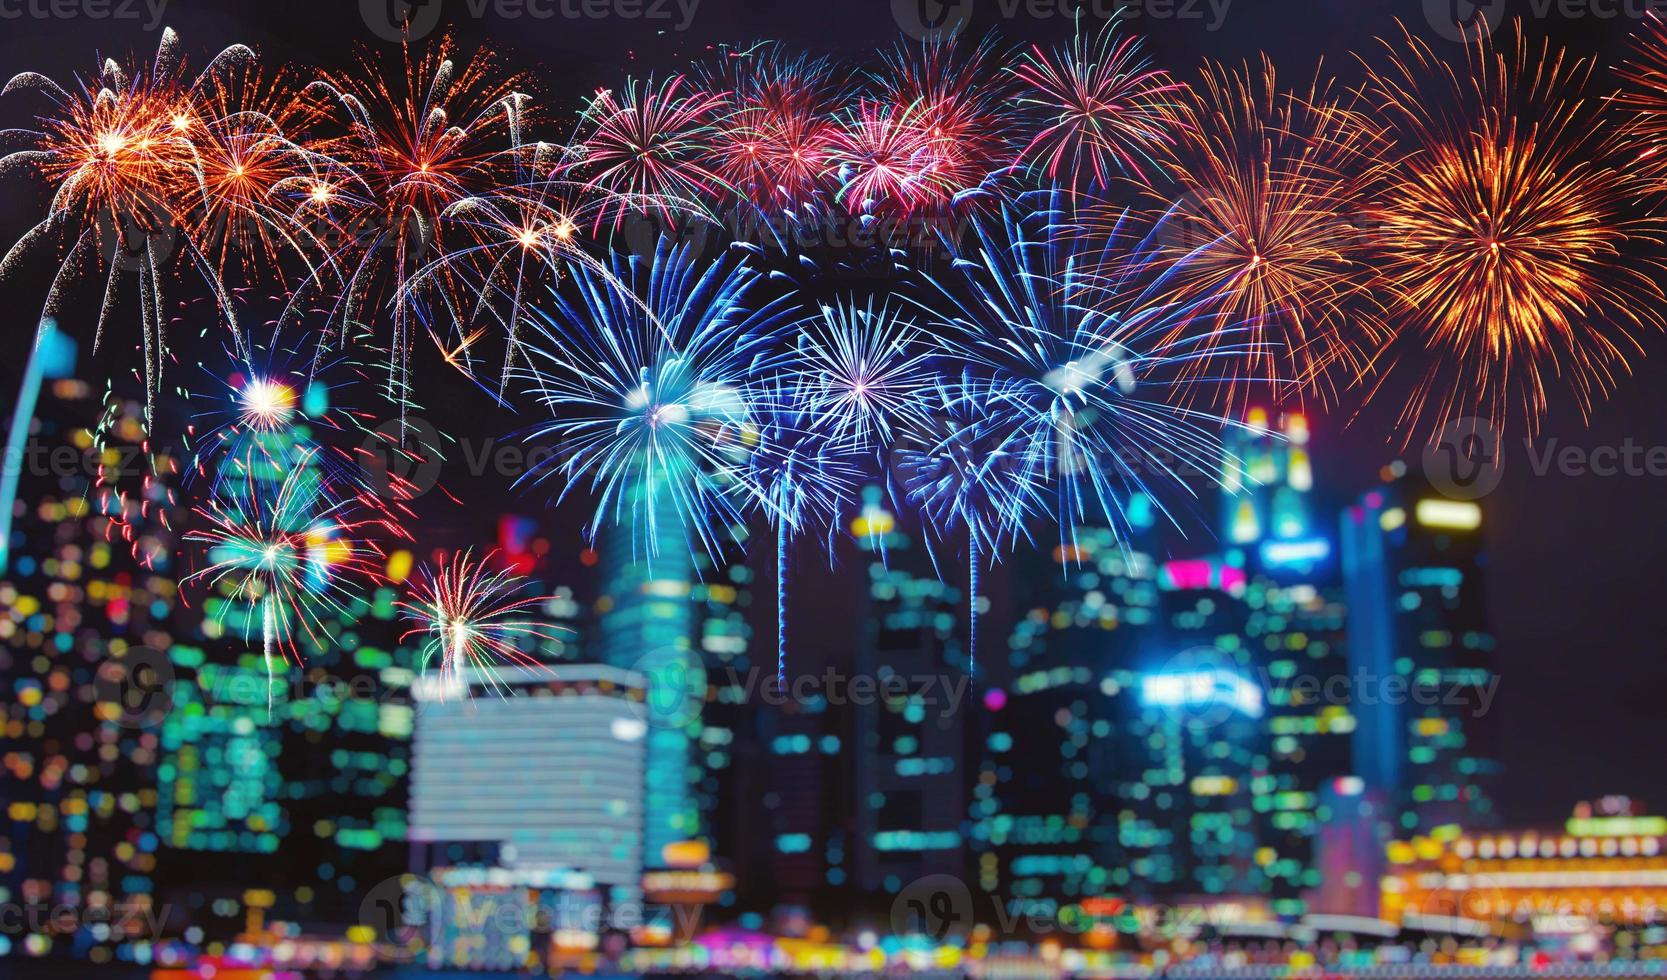 fuochi d'artificio colorati astratti sul cielo scuro. concetto di celebrazione e anniversario foto